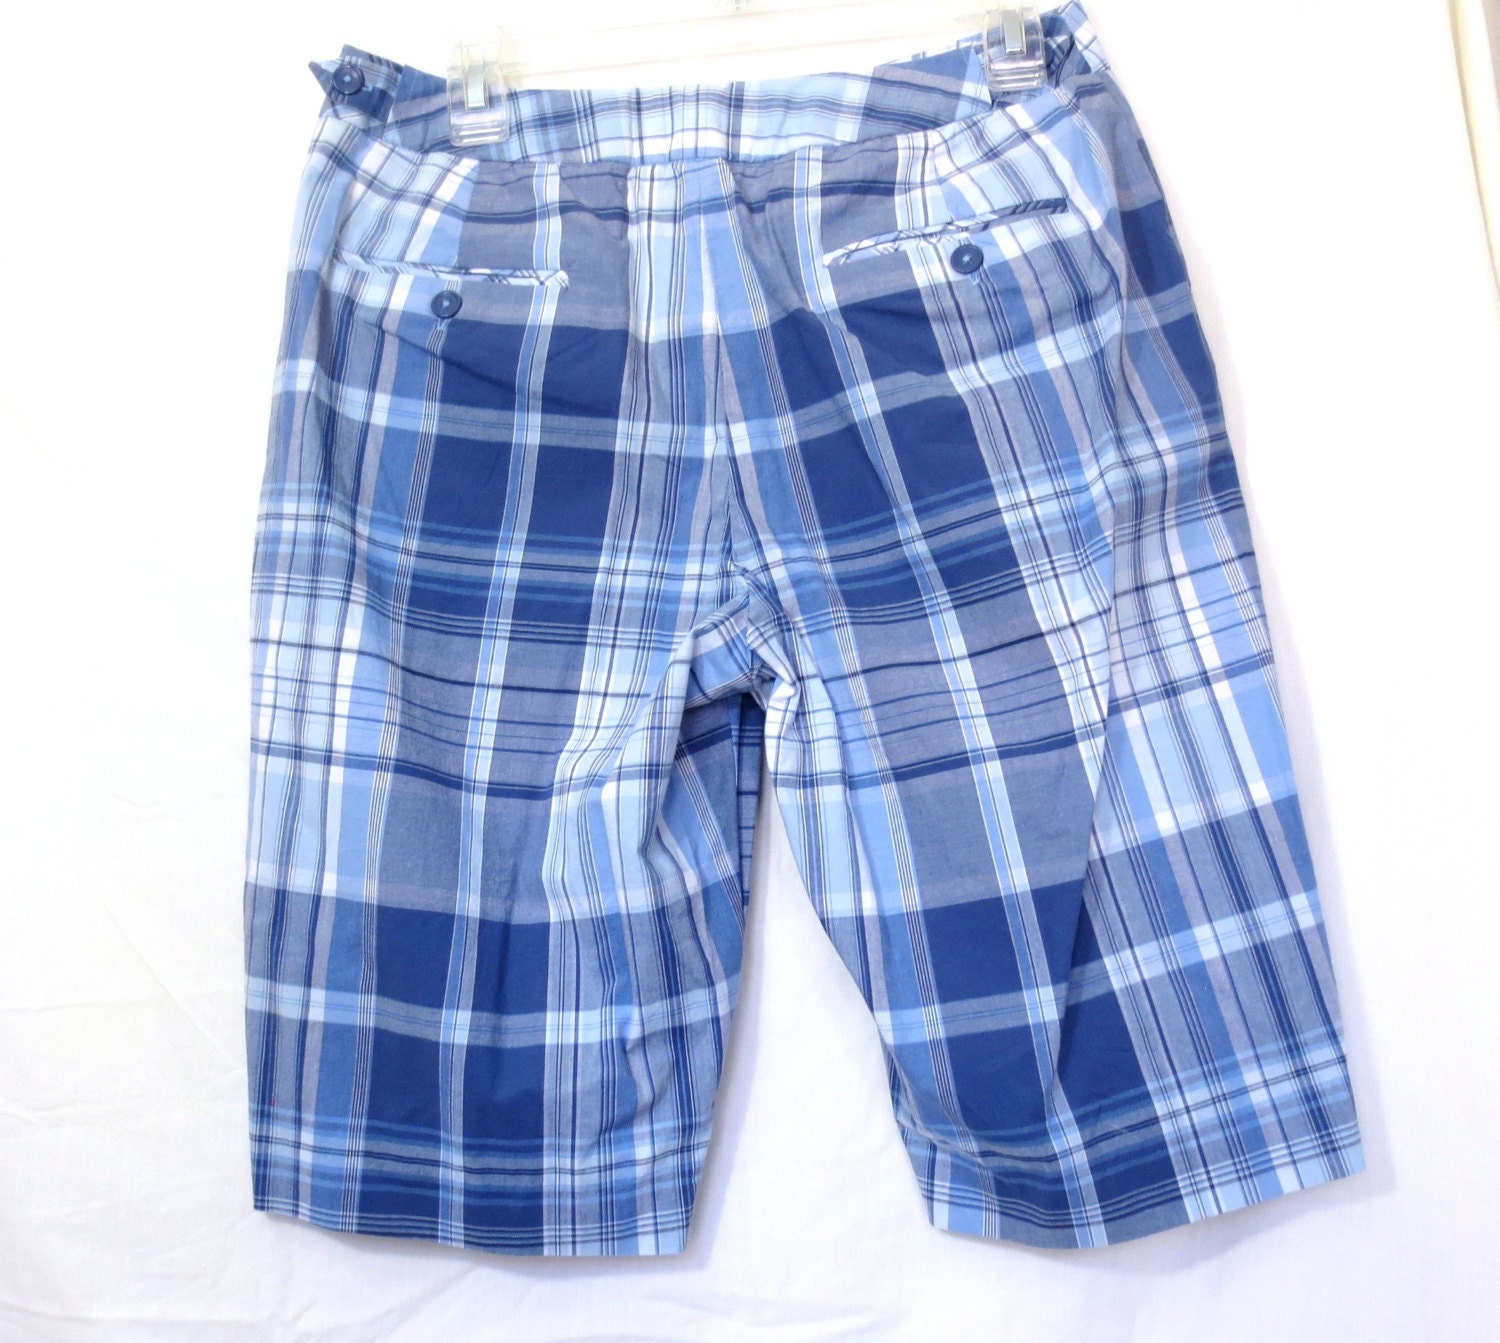 Blue Plaid Shorts Berumuda Shorts Blue and White Size 8